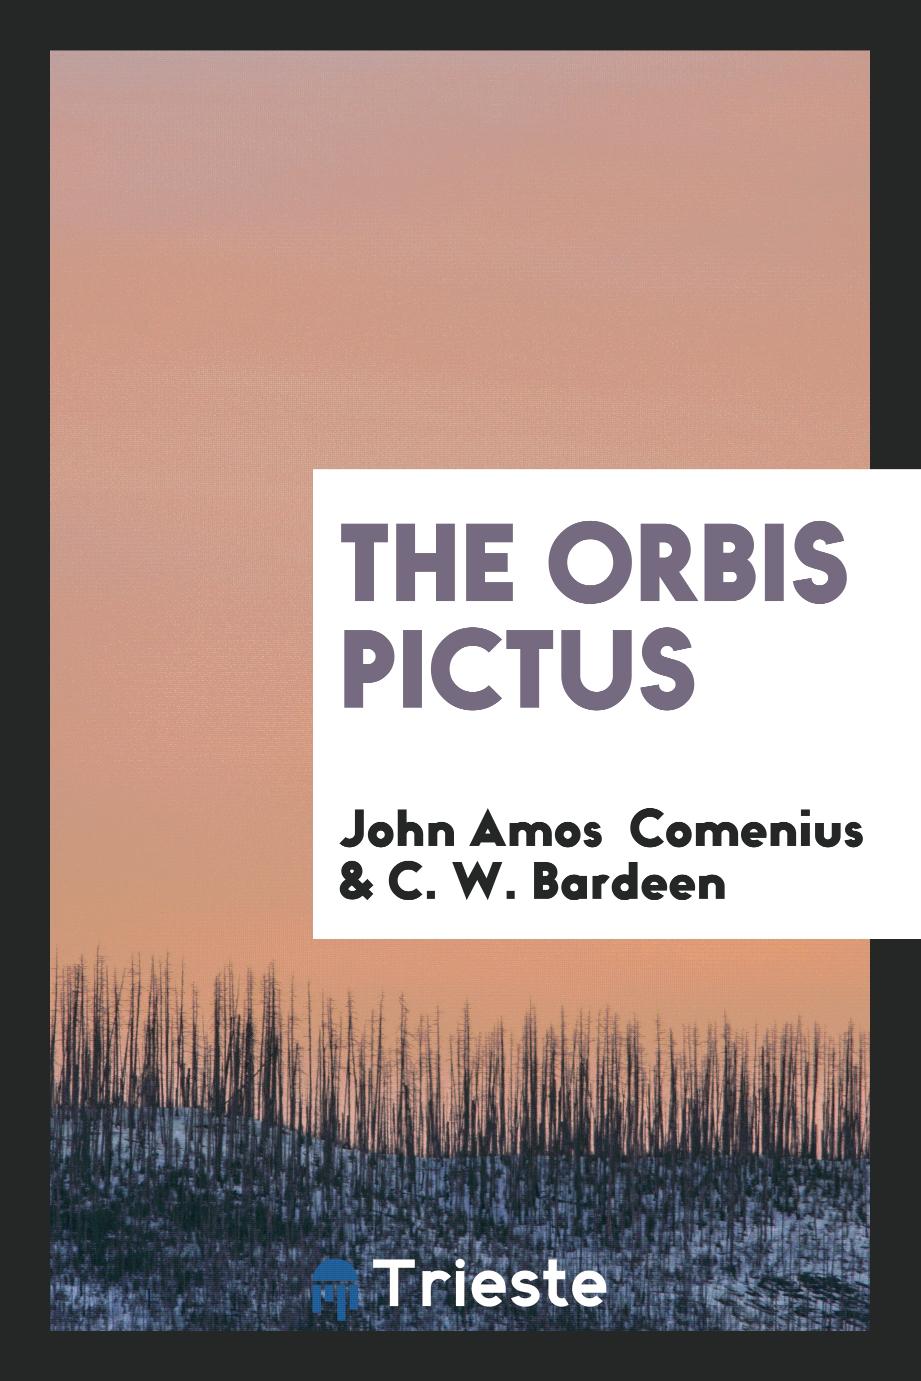 The Orbis Pictus